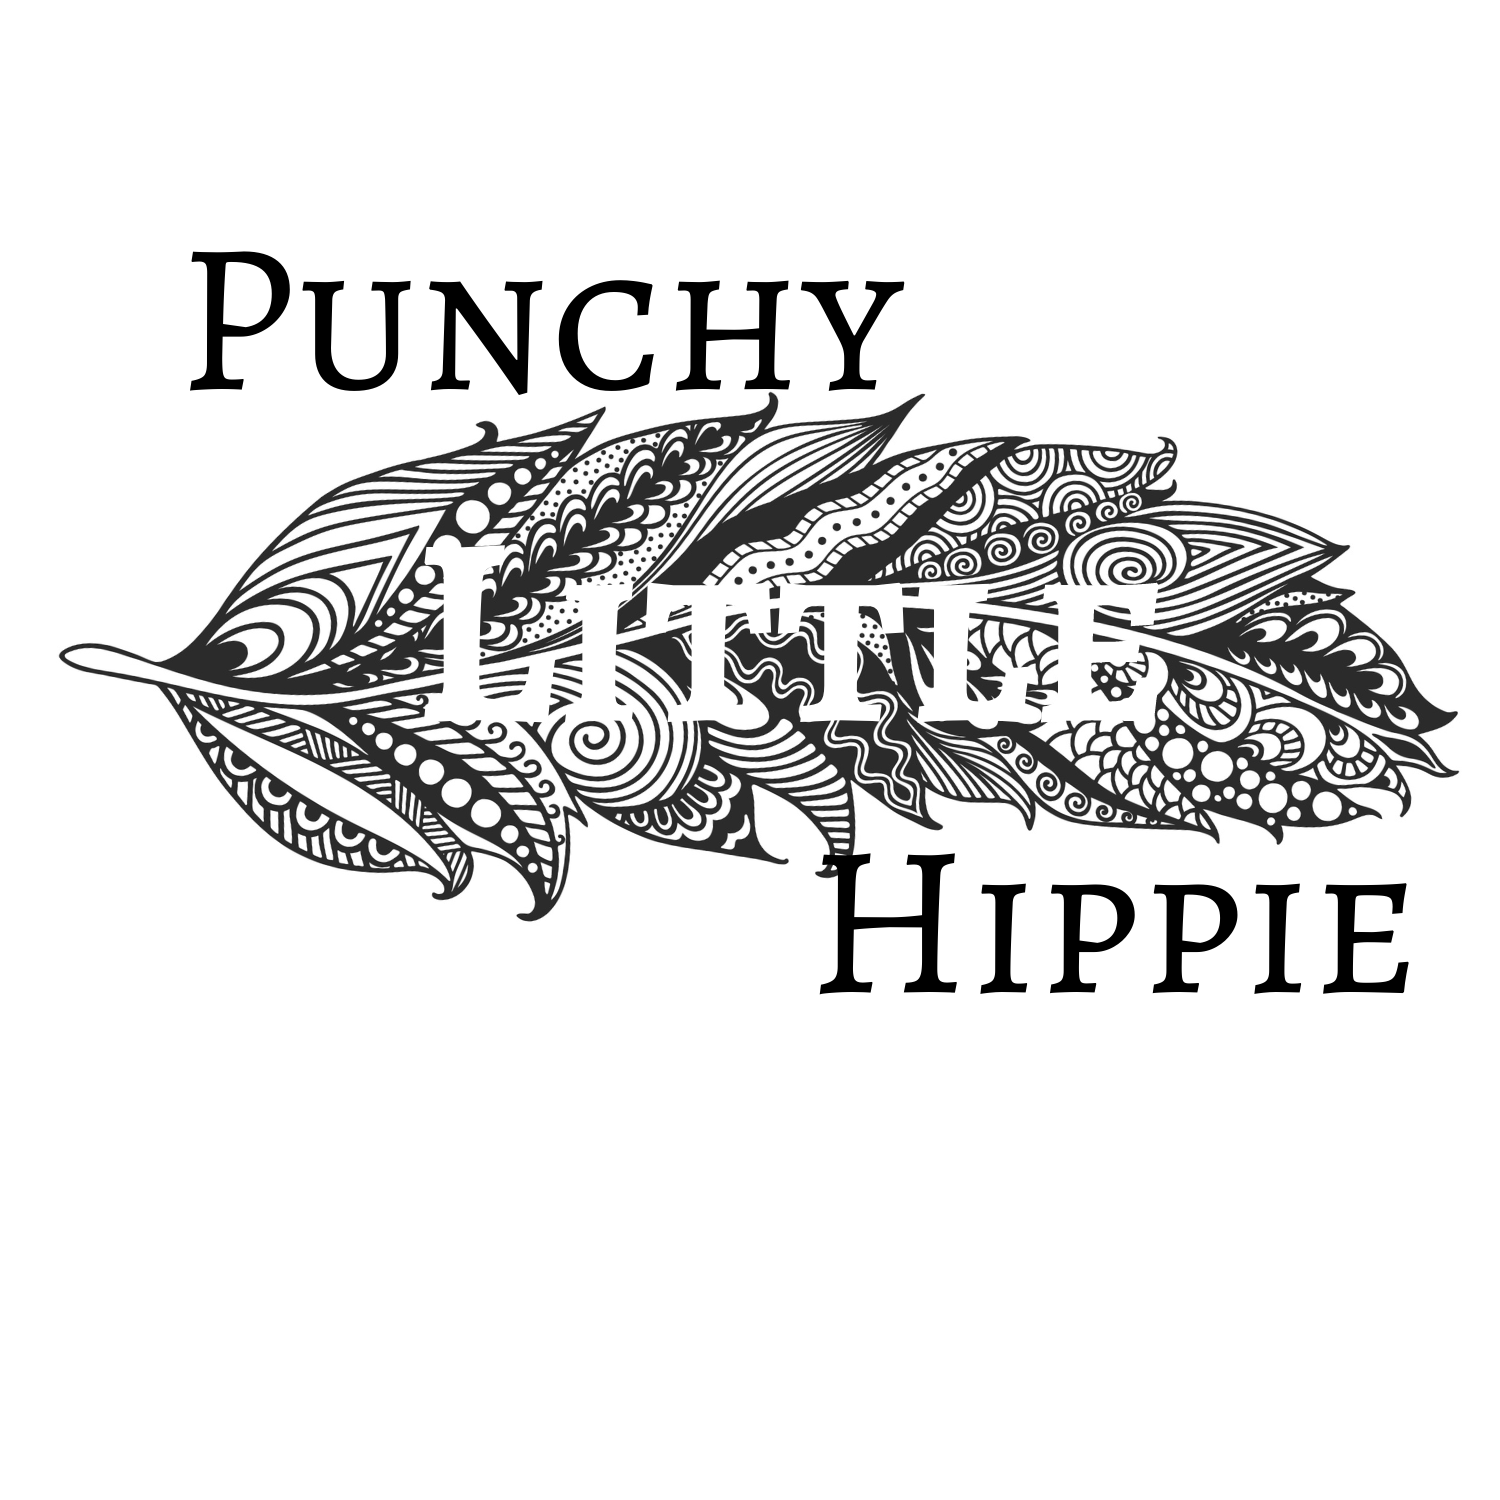 Punchy Little Hippie